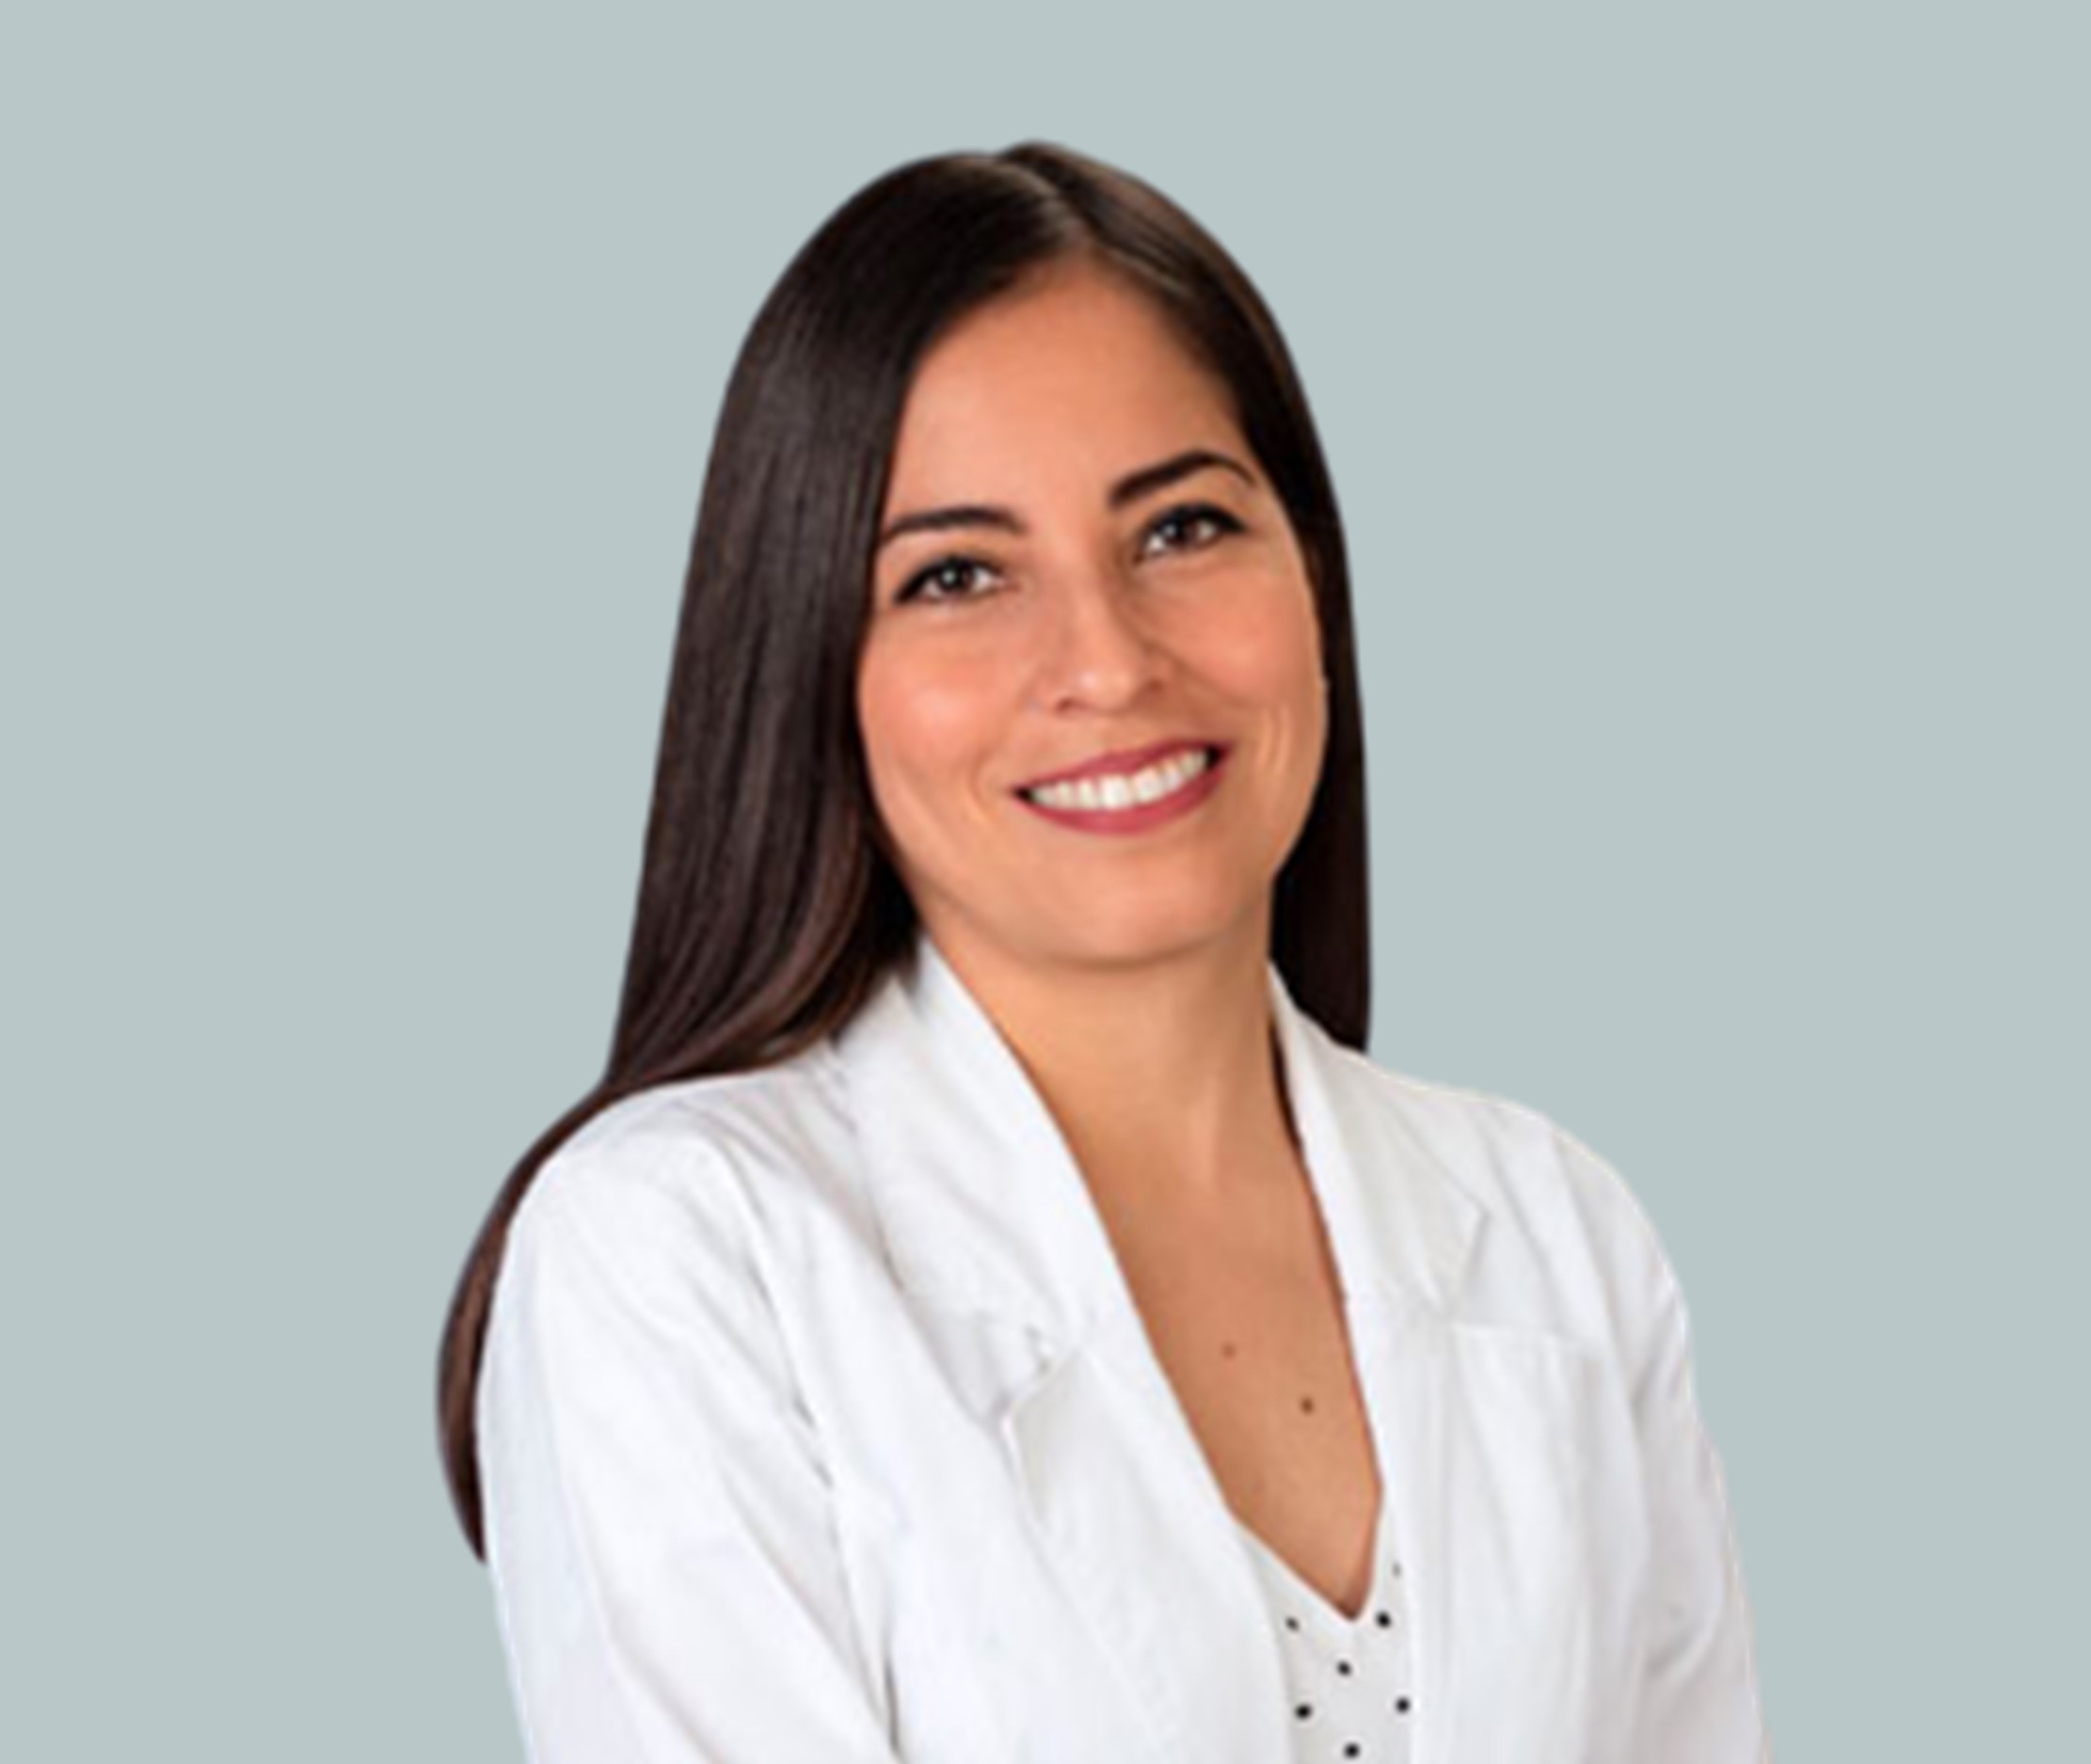 Dra. Joana Sánchez Ortiz oftalmologos oftalmologia Oftalmologo Oftalmólogo